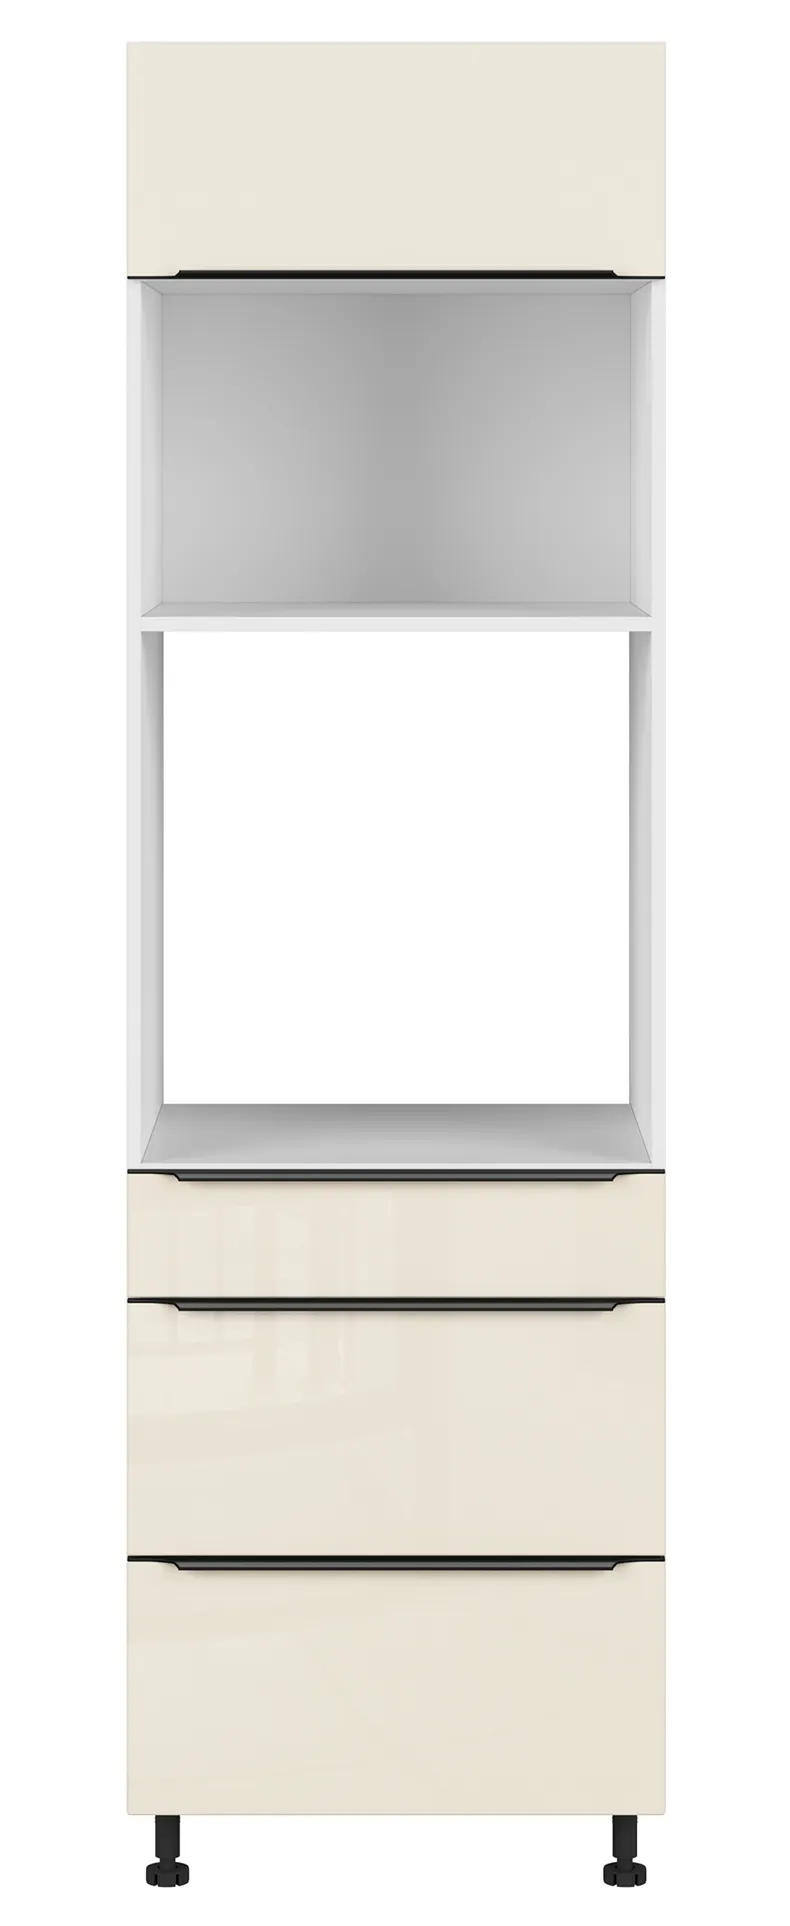 BRW Кухонный шкаф для духовки Sole L6 60 см с ящиками магнолия жемчуг, альпийский белый/жемчуг магнолии FM_DPS_60/207_2SMB/SMB/O-BAL/MAPE фото №1